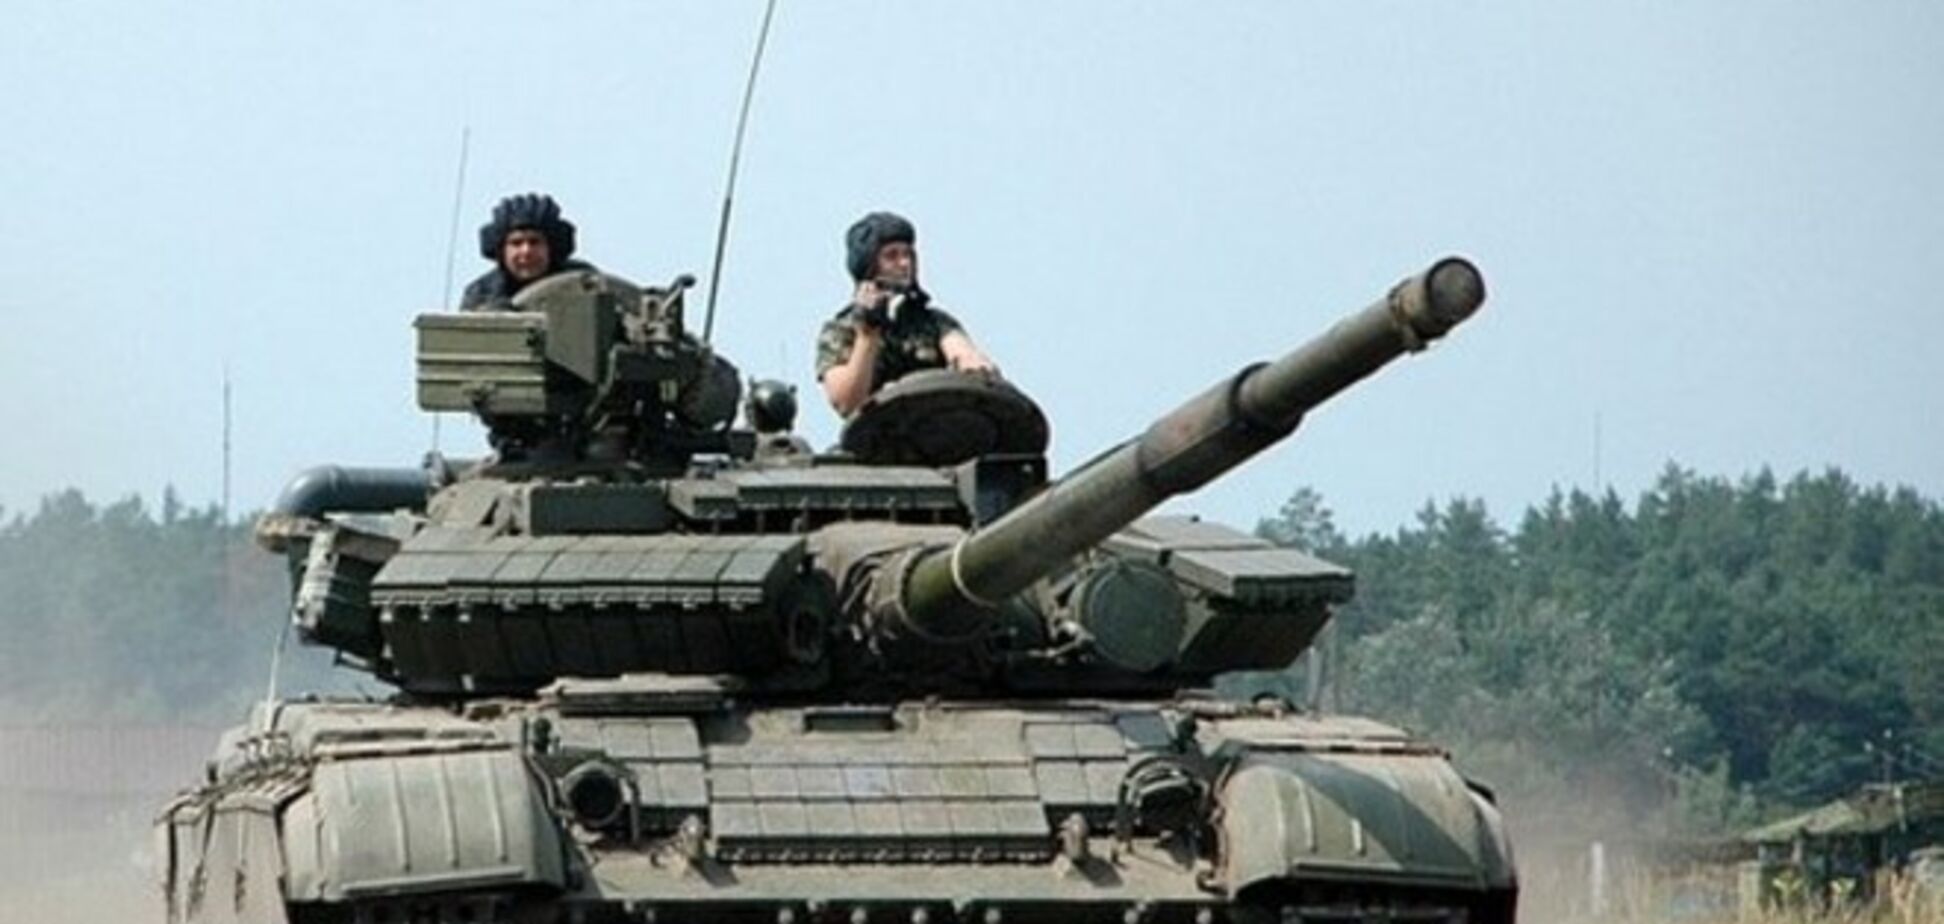 Танки Т-64БВ, переброшенные в Украину, находятся на базах хранения МО РФ - Тымчук